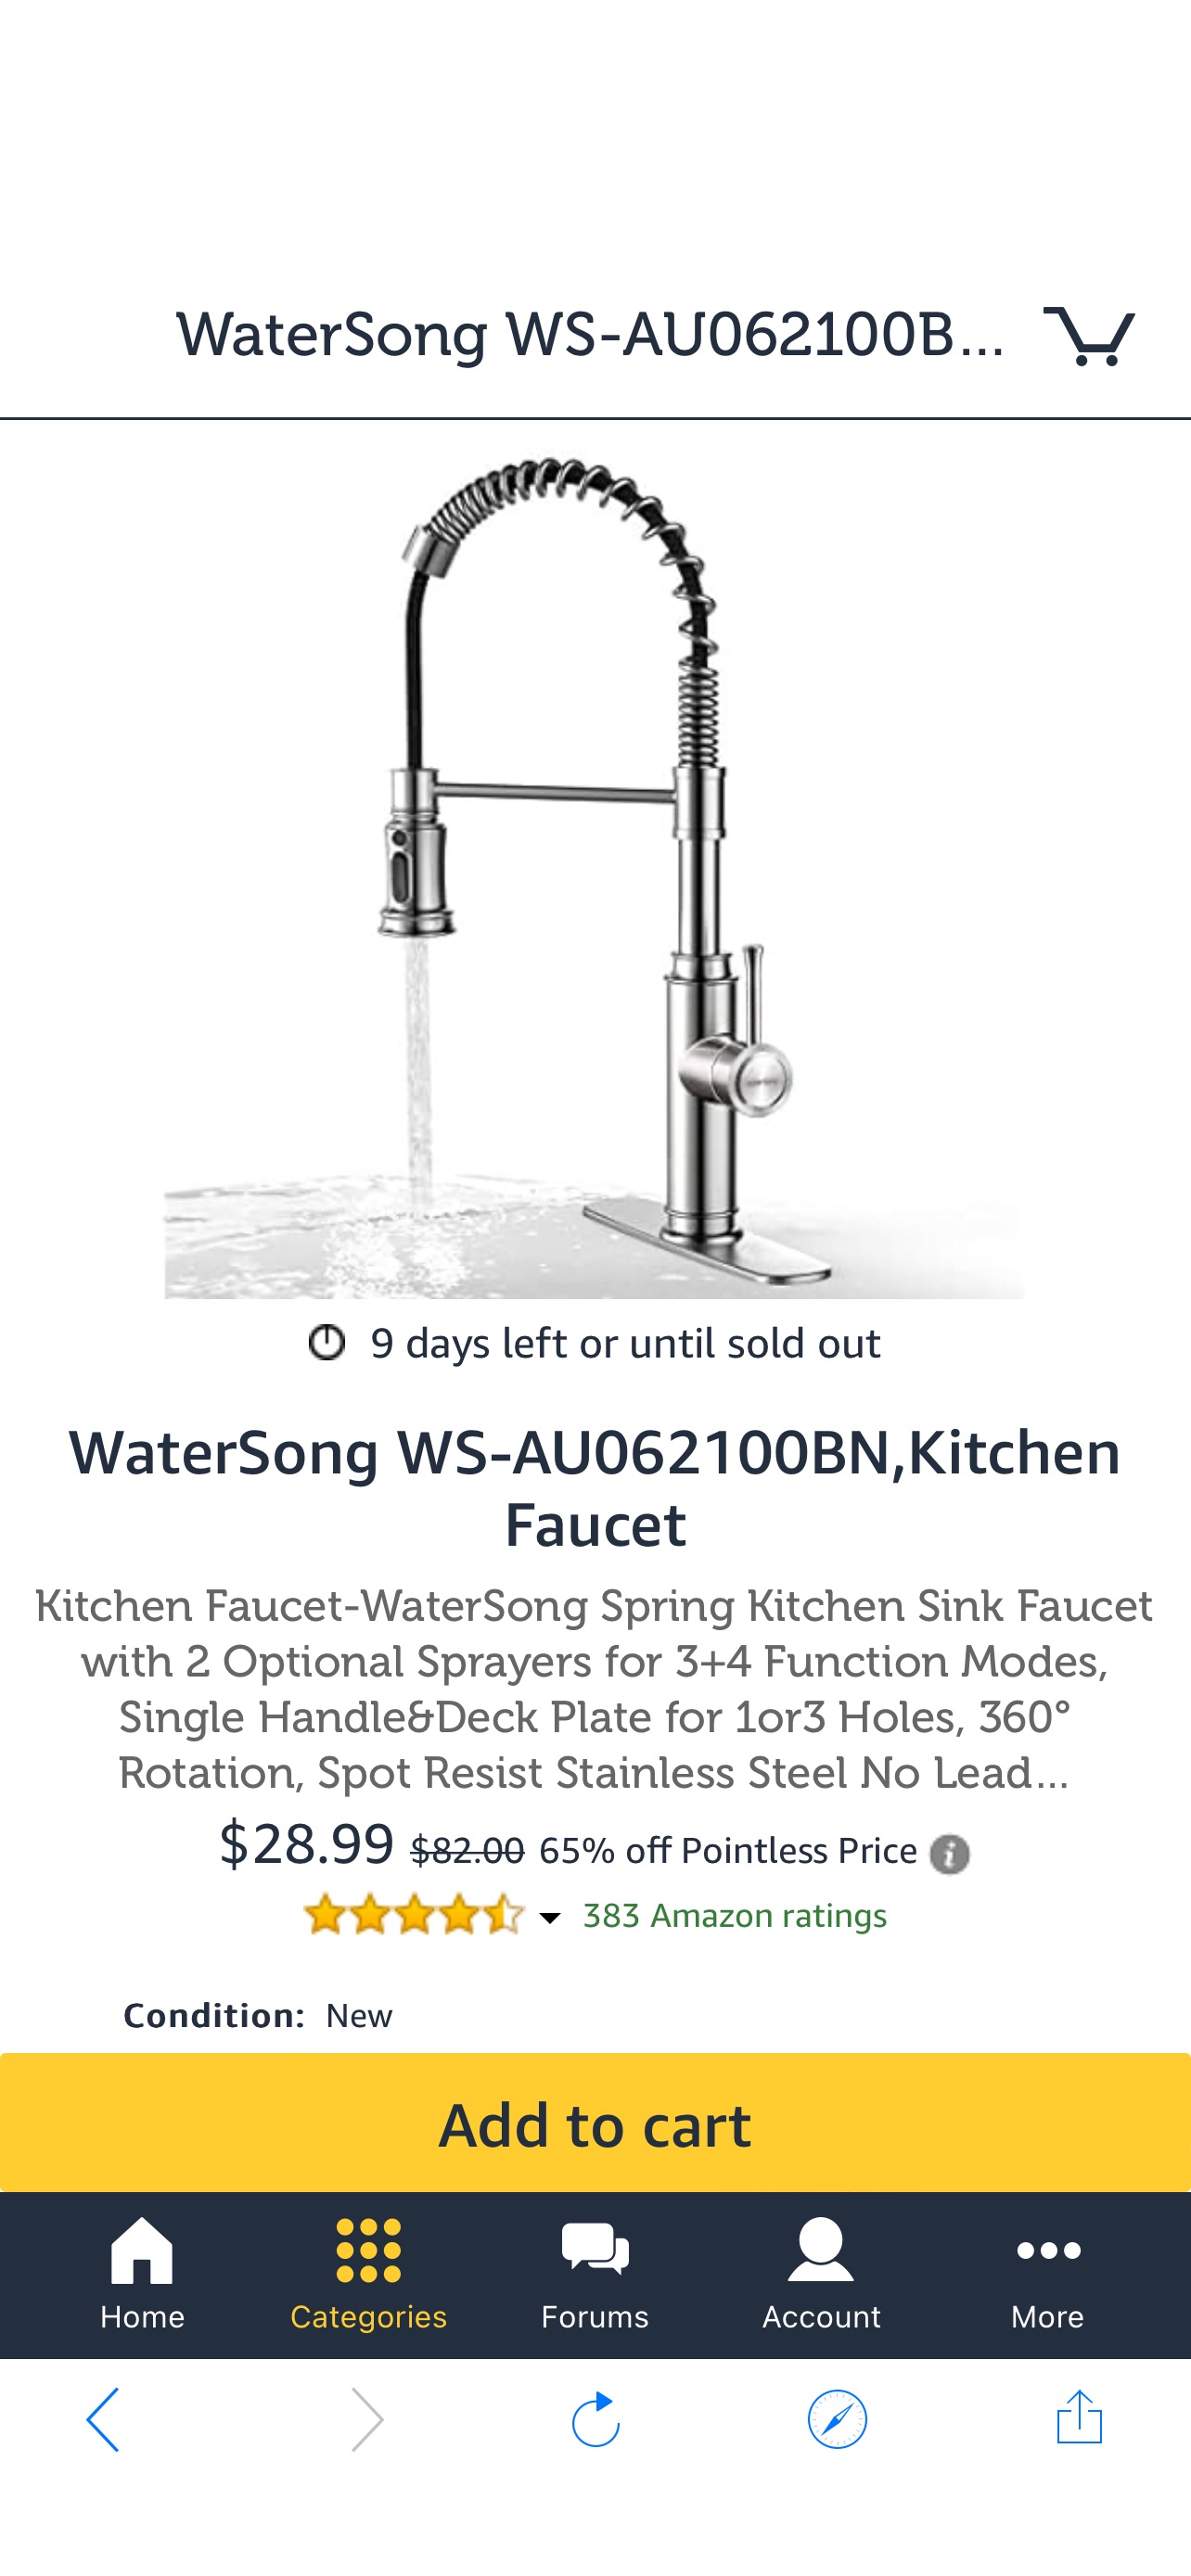 水龙头WaterSong WS-AU062100BN,Kitchen Faucet